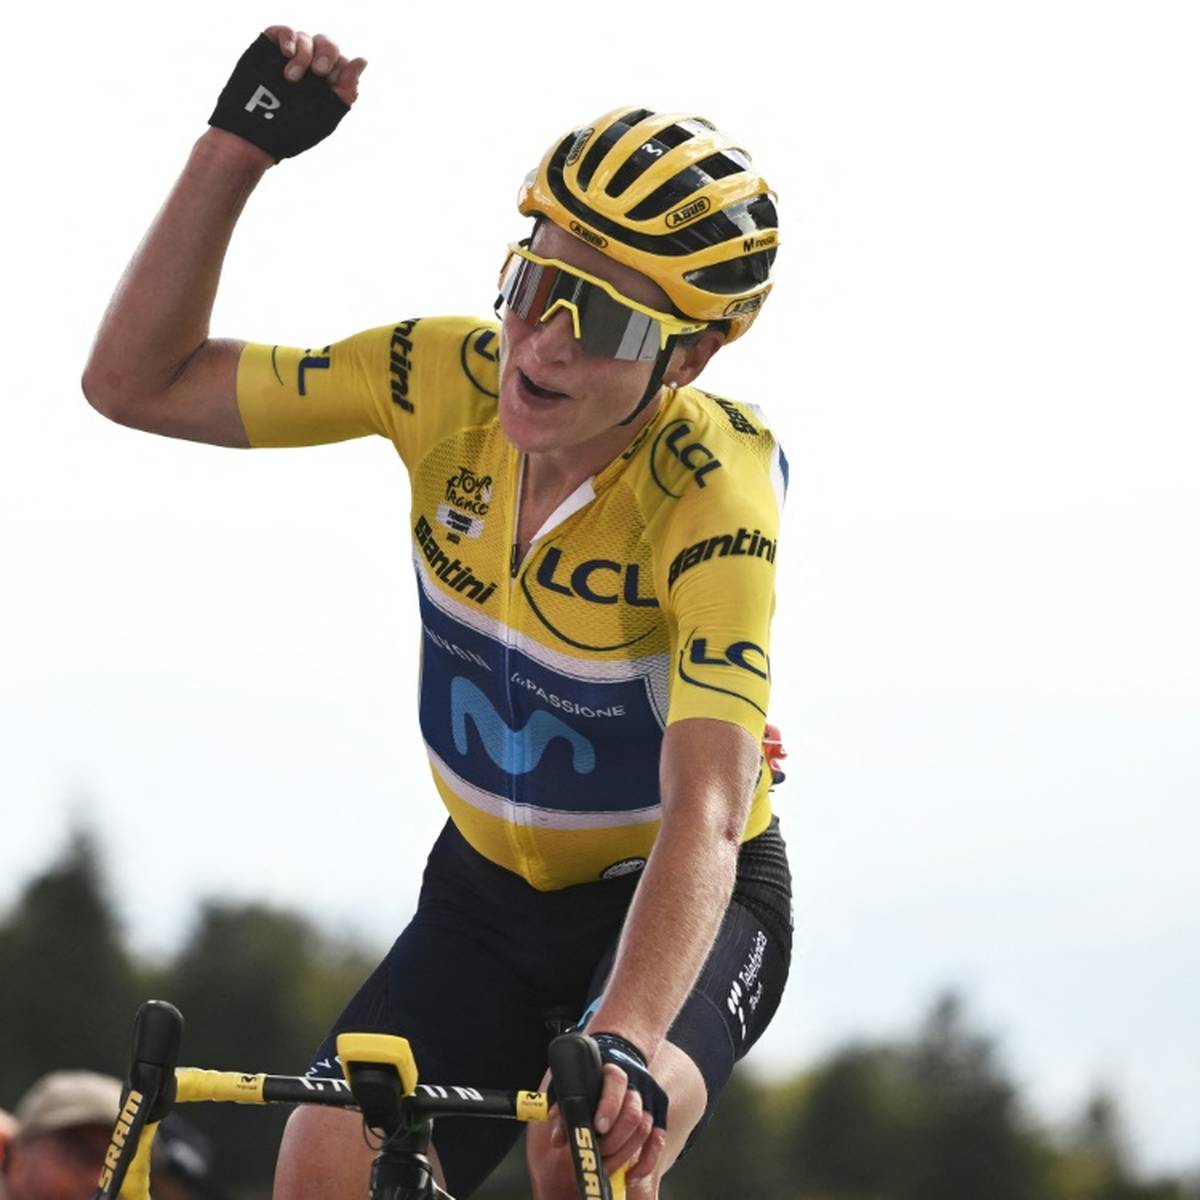 Die niederländische Olympiasiegerin Annemiek van Vleuten hat Radsport-Geschichte geschrieben und die Premiere der Tour de France Femmes gewonnen.